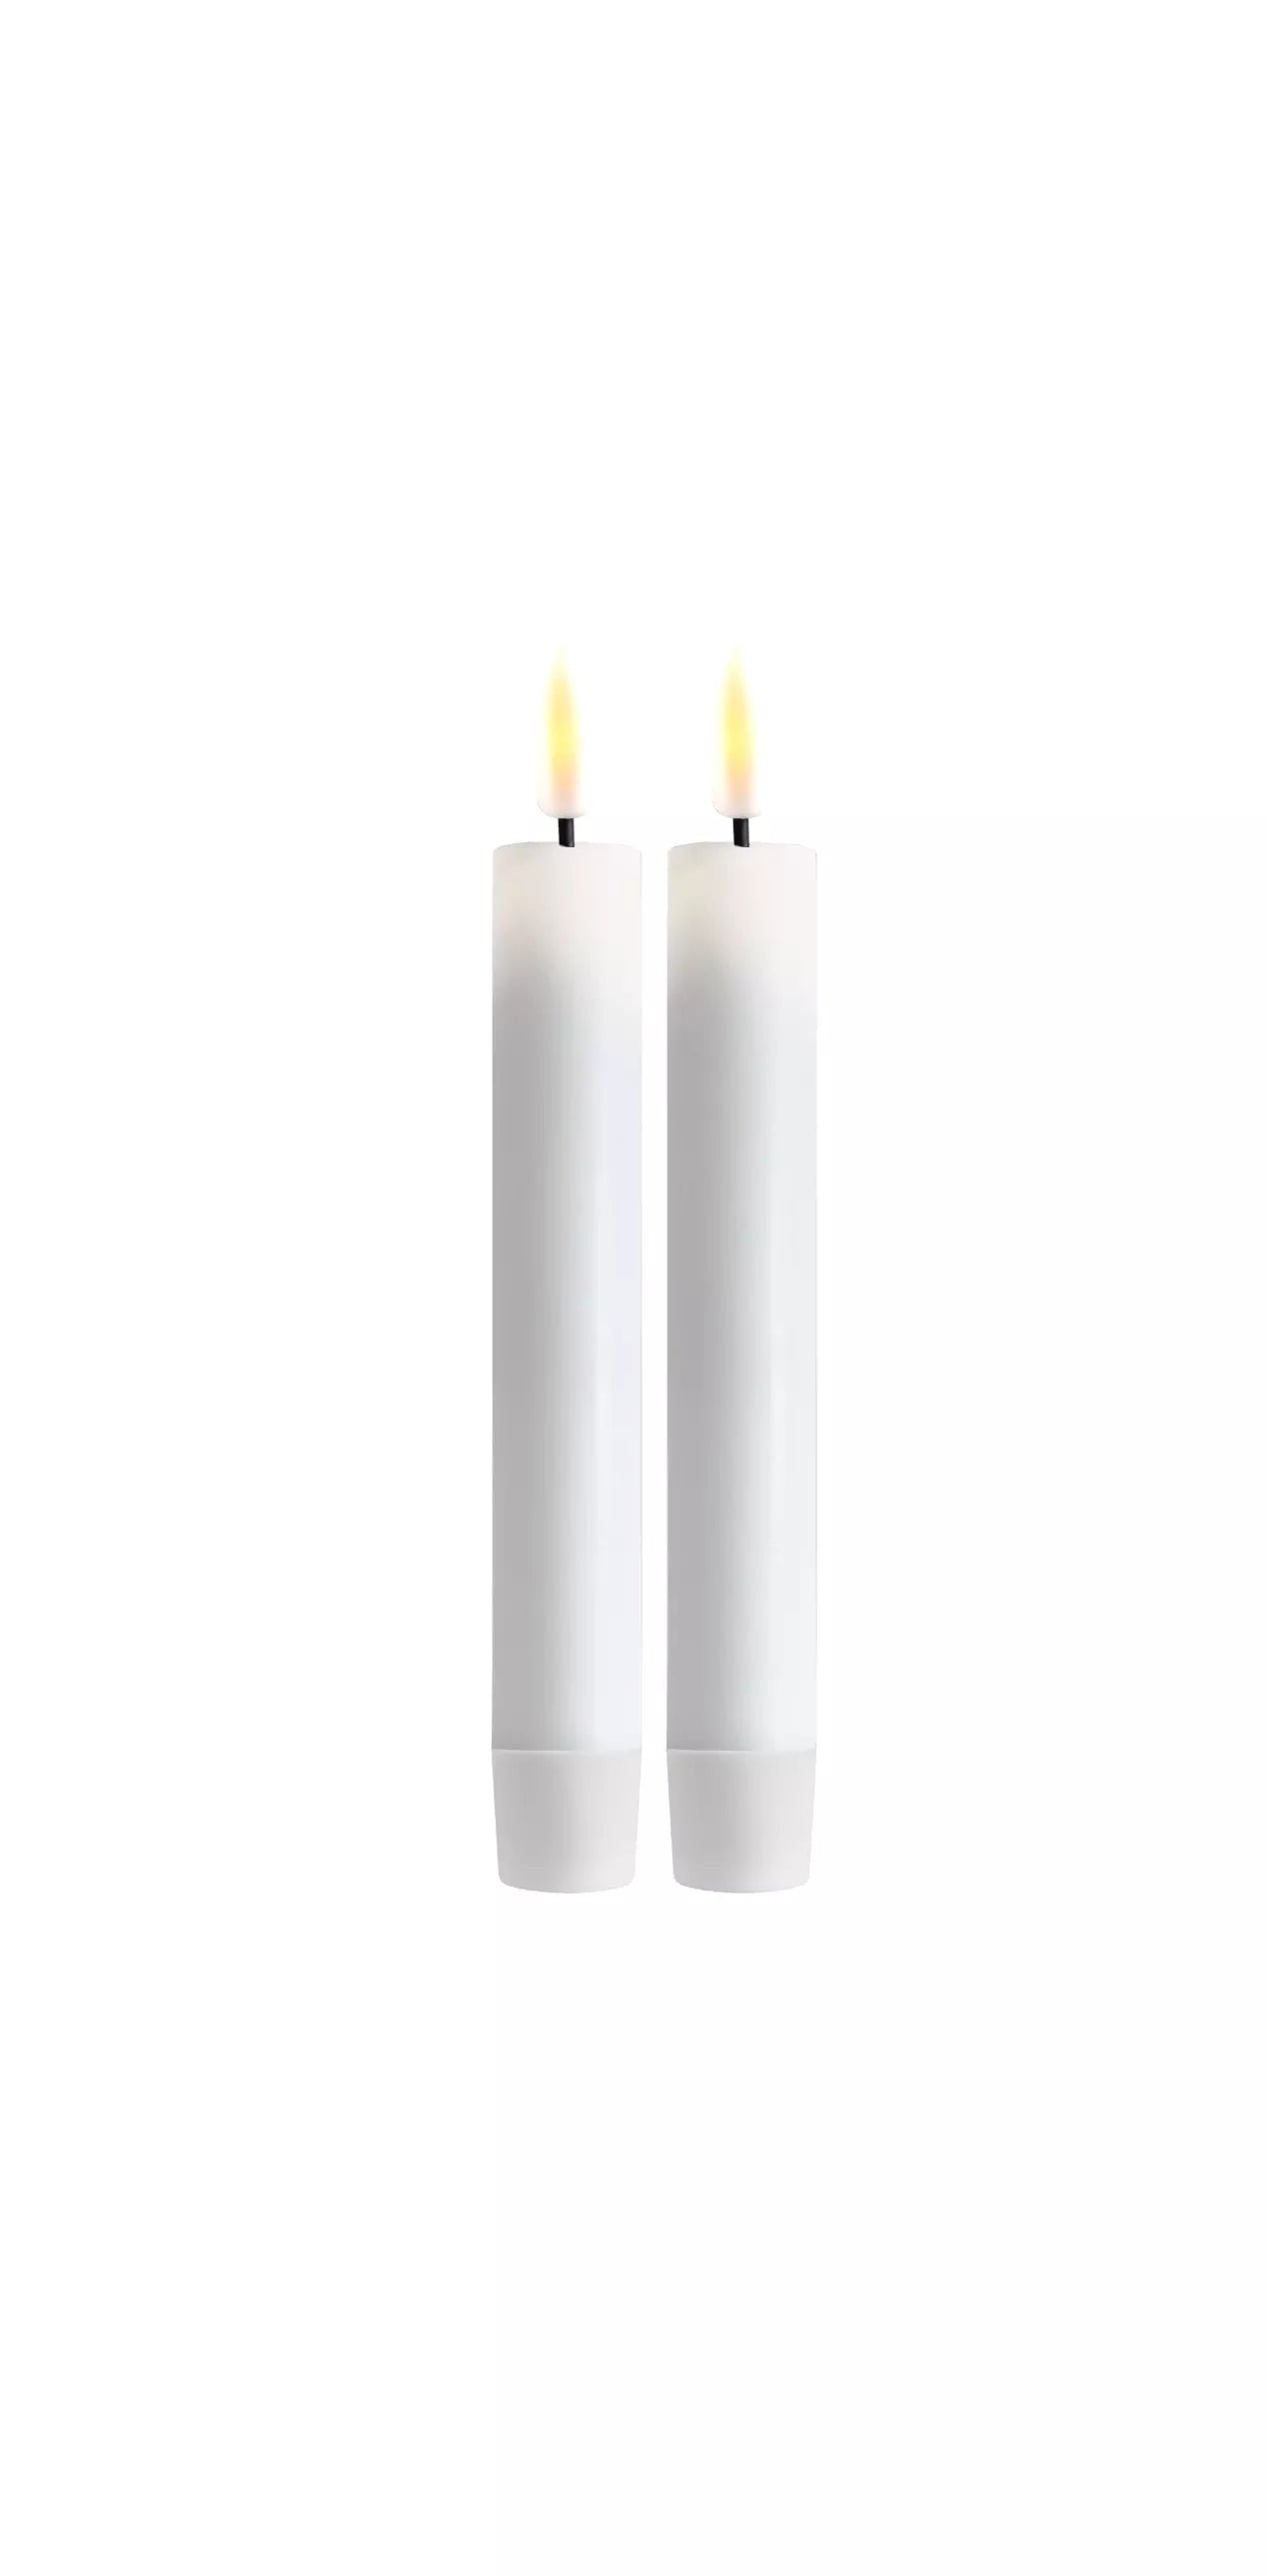 LED Dinner Candle - 2 stk- Hvit / Hvite LED kronelys. H:15 cm